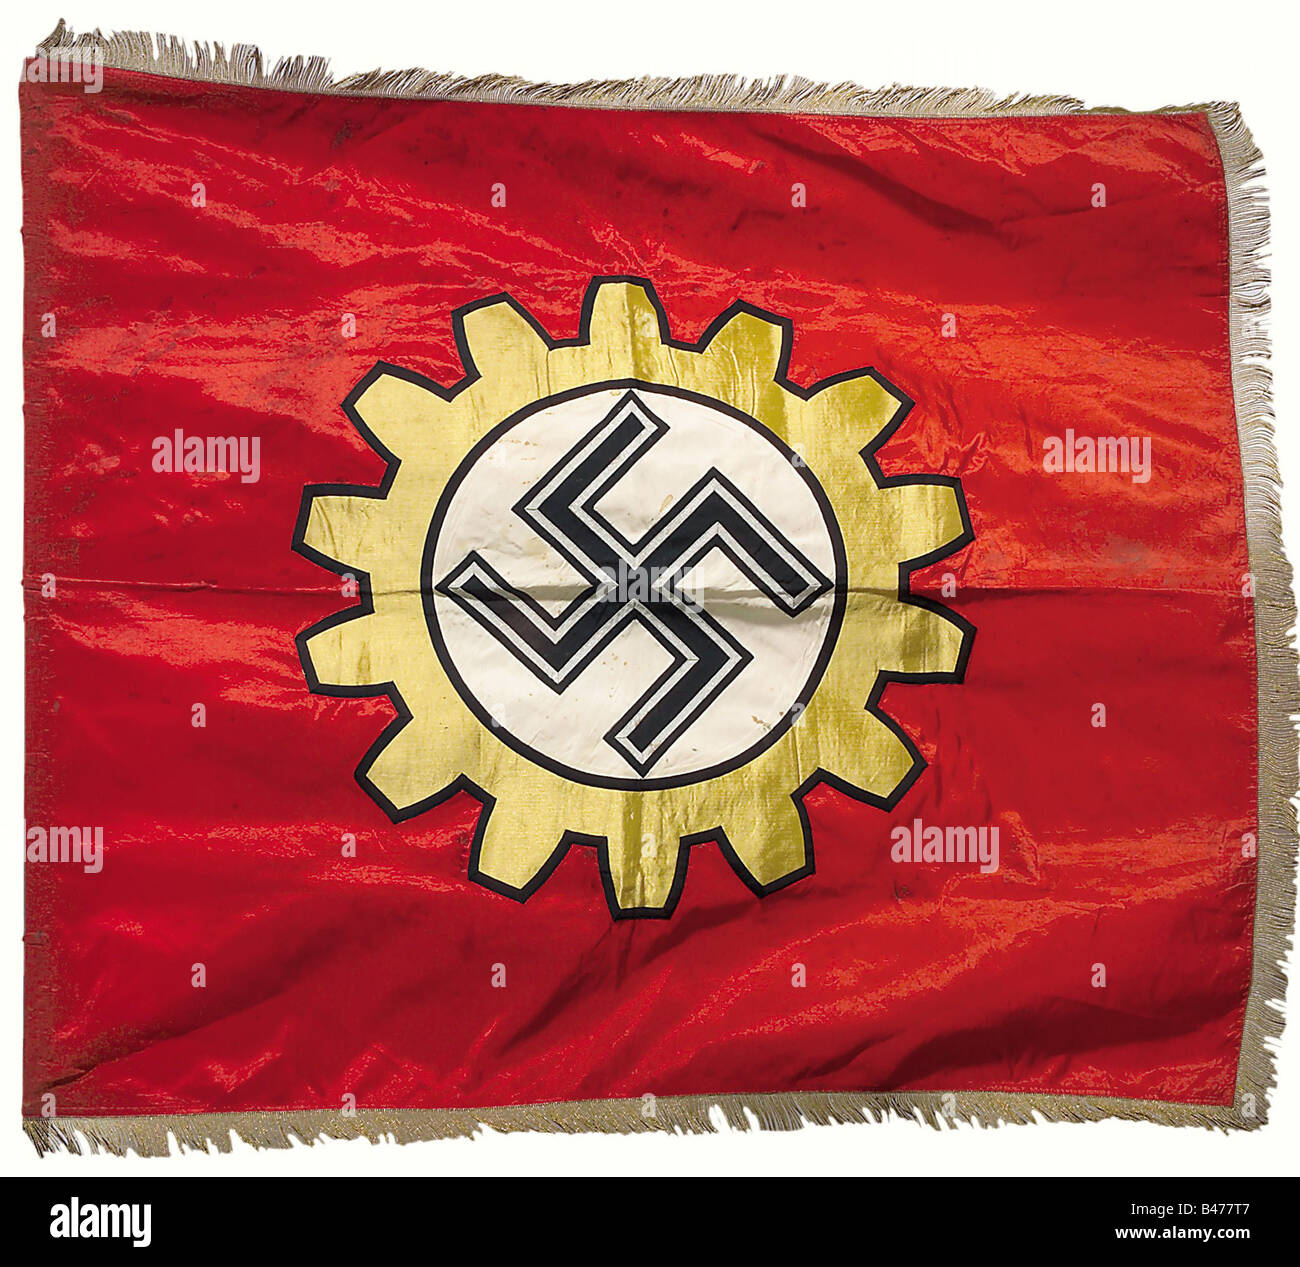 Una bandiera per una fabbrica di modelli DAF (German Labor Front), una bandiera di seta rossa con frangia dorata su tre bordi e un emblema DAF cucito su entrambi i lati, il dispositivo ruota dentata di broccato d'oro, all'interno del quale su un terreno bianco una swastika nera in piedi con bordatura intrecciata d'argento. Dimensioni 120 x 135 cm. Leggermente sporco, gli anelli di attaccamento abscised. Storico, storico, 1930s, 1930s, 20th secolo, German Labor Front, German Labor Front, Germany, NS, National Socialism, Nazism, Third Reich, German Reich, organizzazione, organizzazione, organizzazioni, organizzazioni, oggetto, obiettivo, Foto Stock